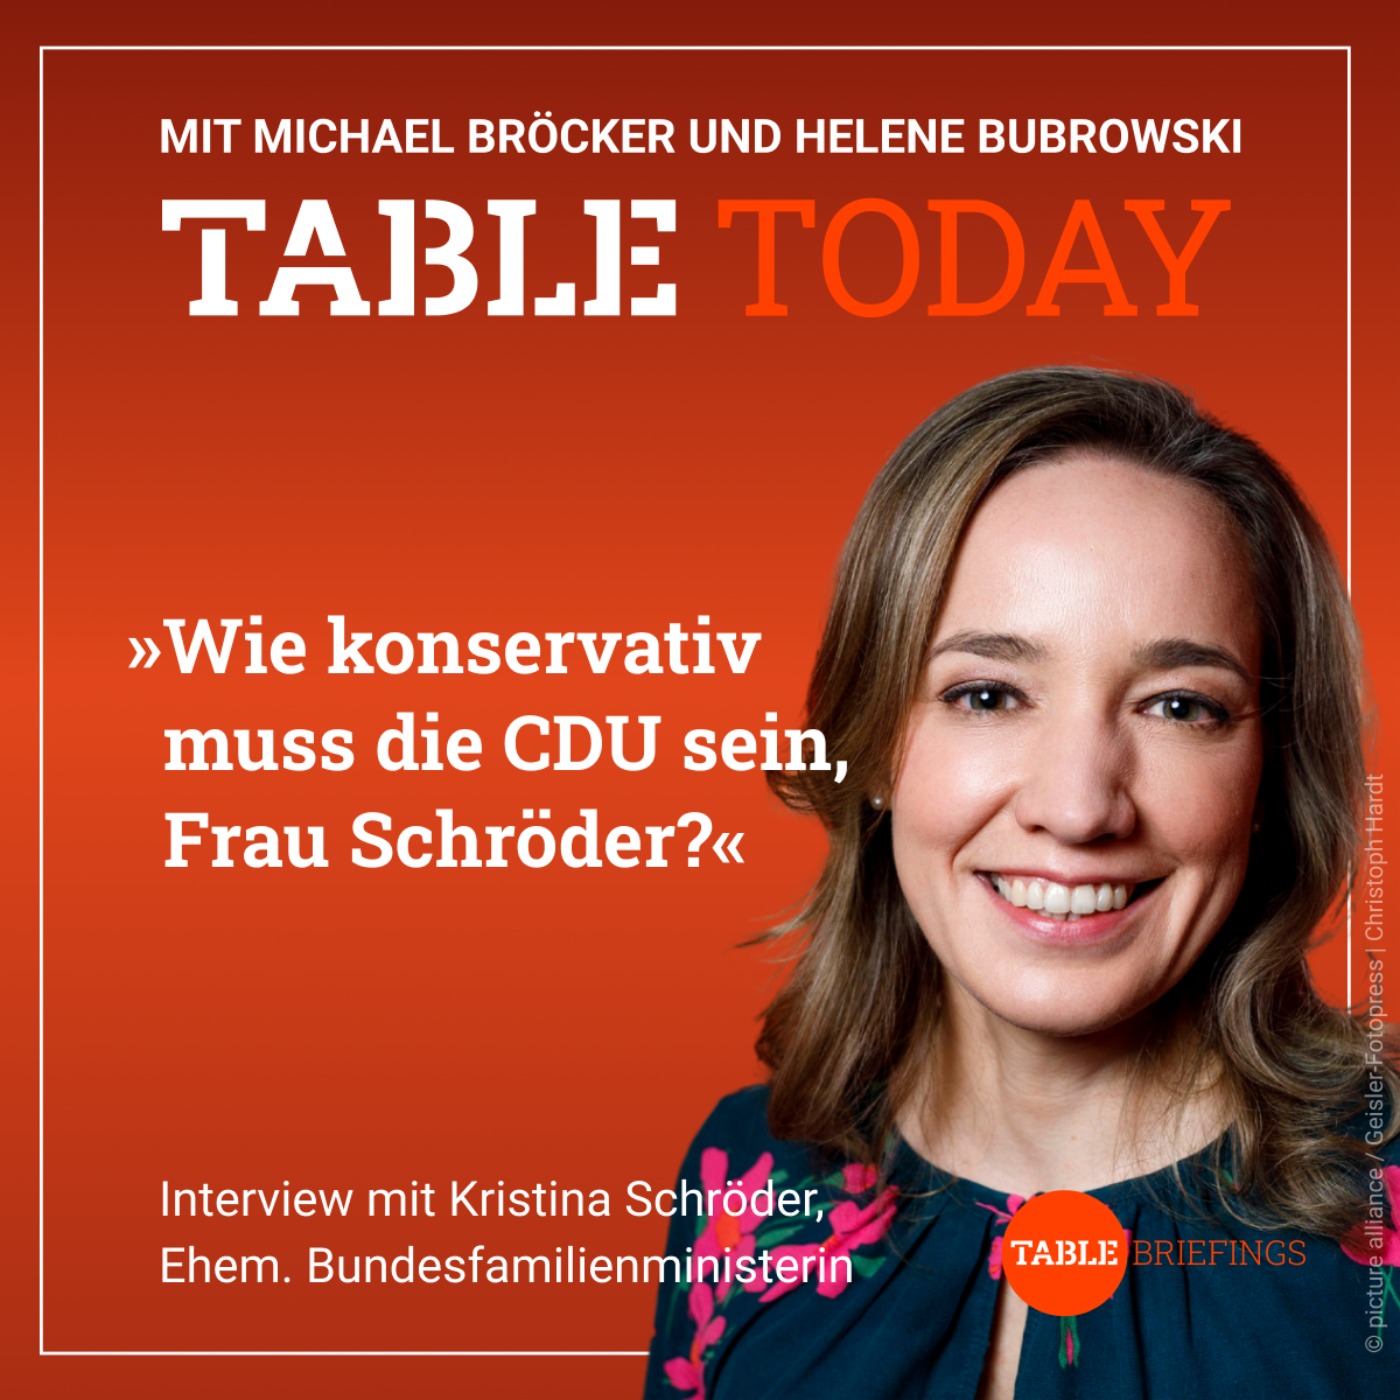 Wie konservativ muss die CDU sein, Frau Schröder?